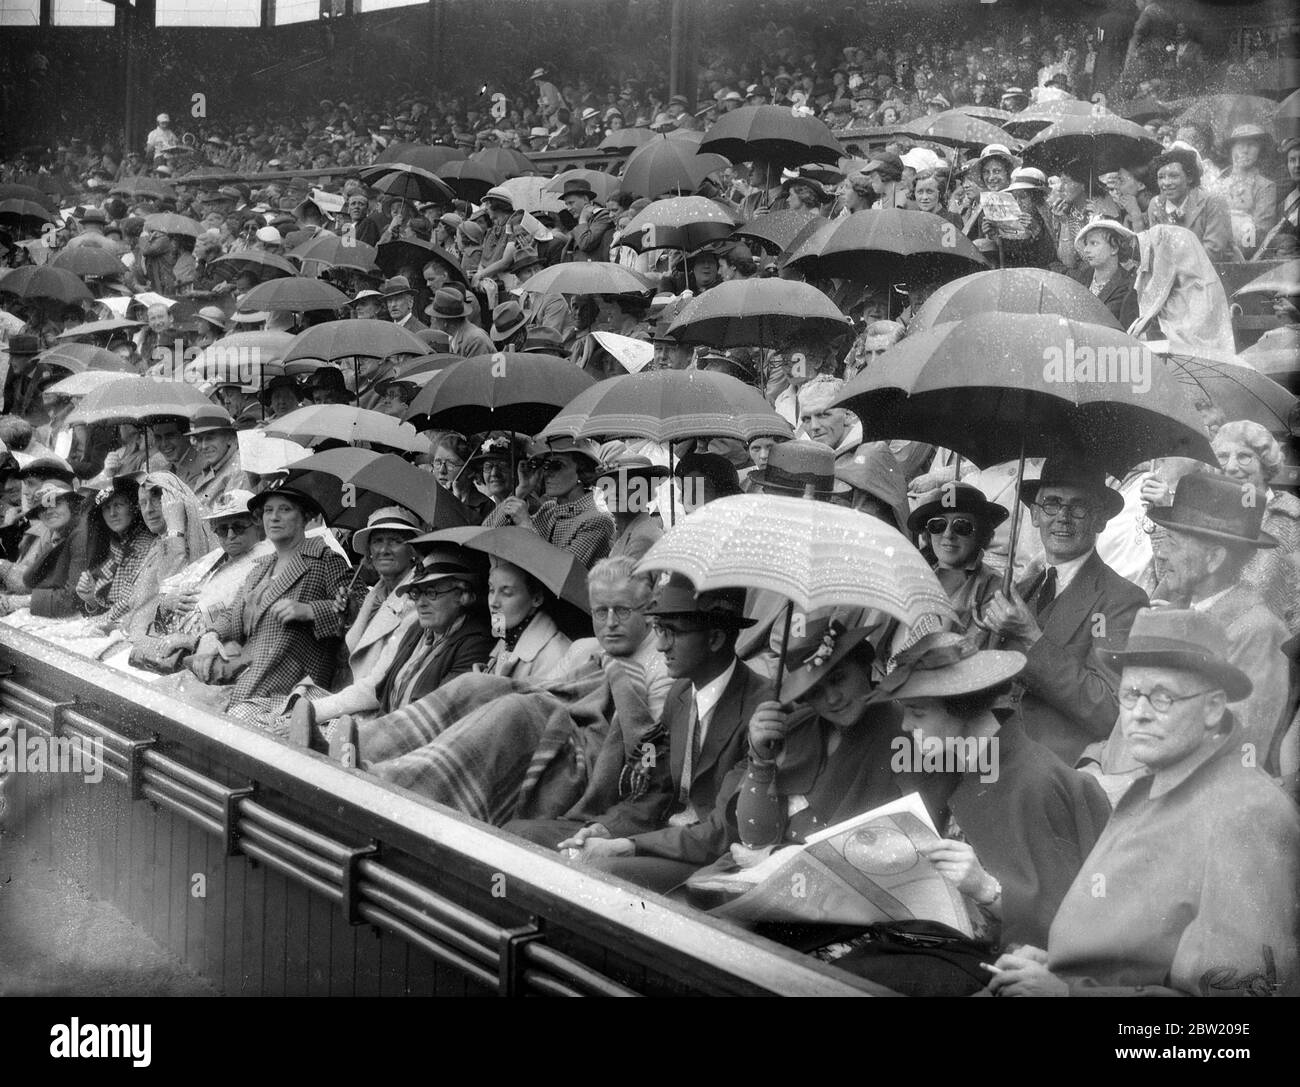 Per la prima volta dall'inizio dei campionati, la pioggia ha smesso di giocare alla Corte Centrale di Wimbledon, durante la partita tra FRU Sperling, la preferita danese per il titolo femminile, e Miss Alice Marble, la campionessa americana femminile. Ombrelloni che riparano la folla sul Centro Corte. 29 giugno 1937 Foto Stock